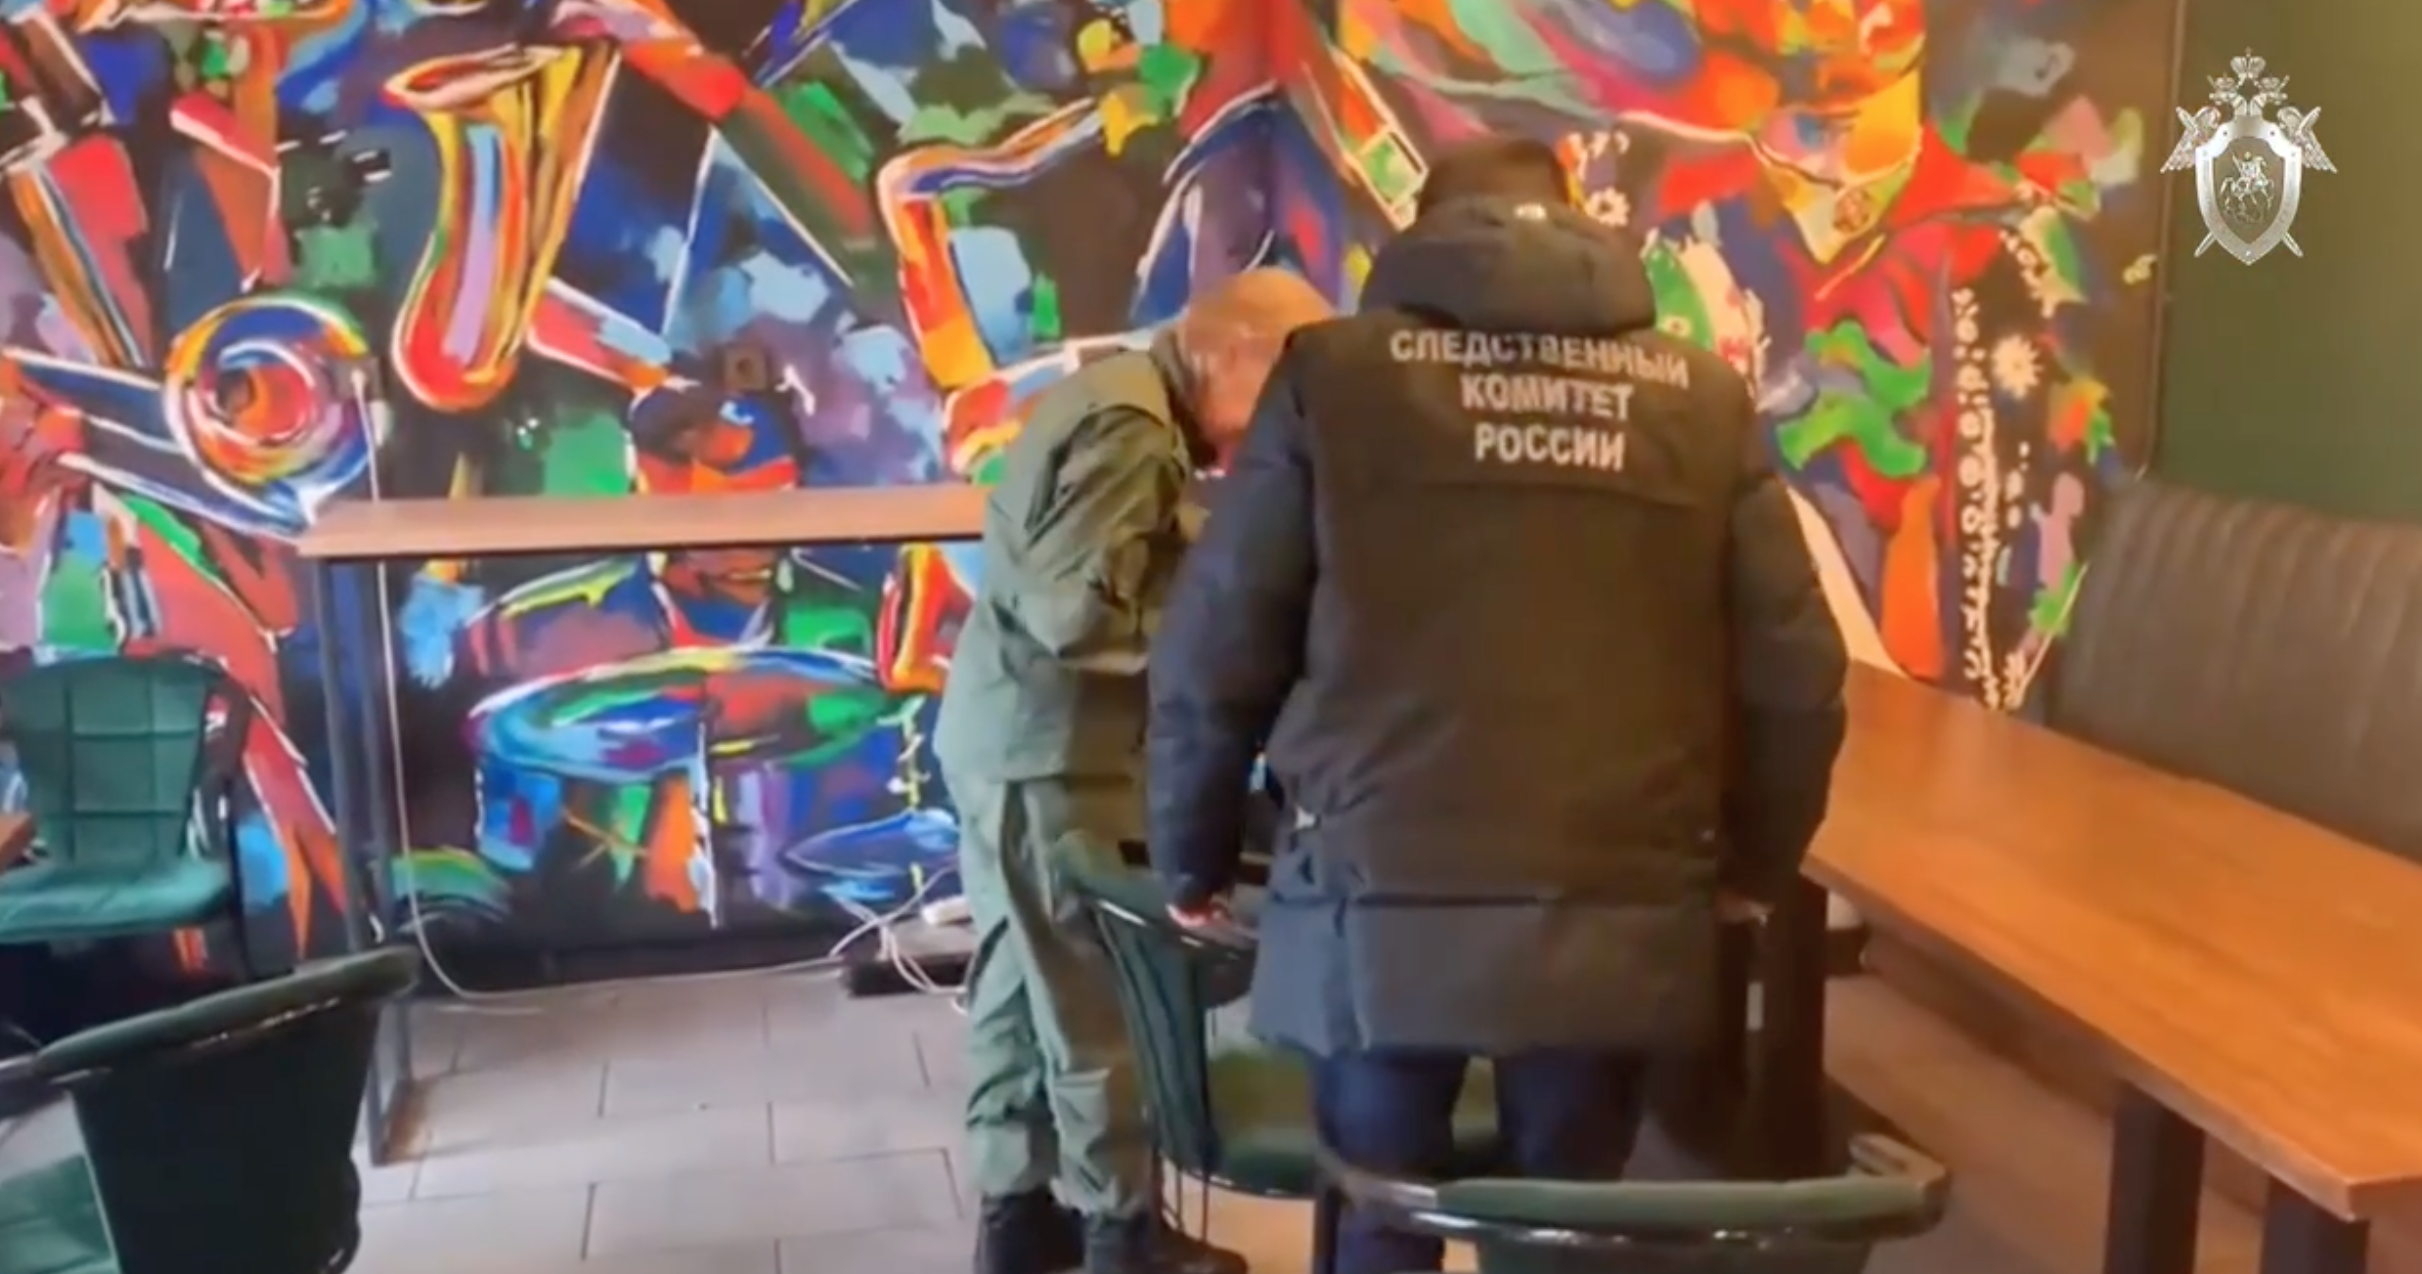 Ни капли крови: СК показал на видео место резни в Подольске, в которой подозревали сына депутата